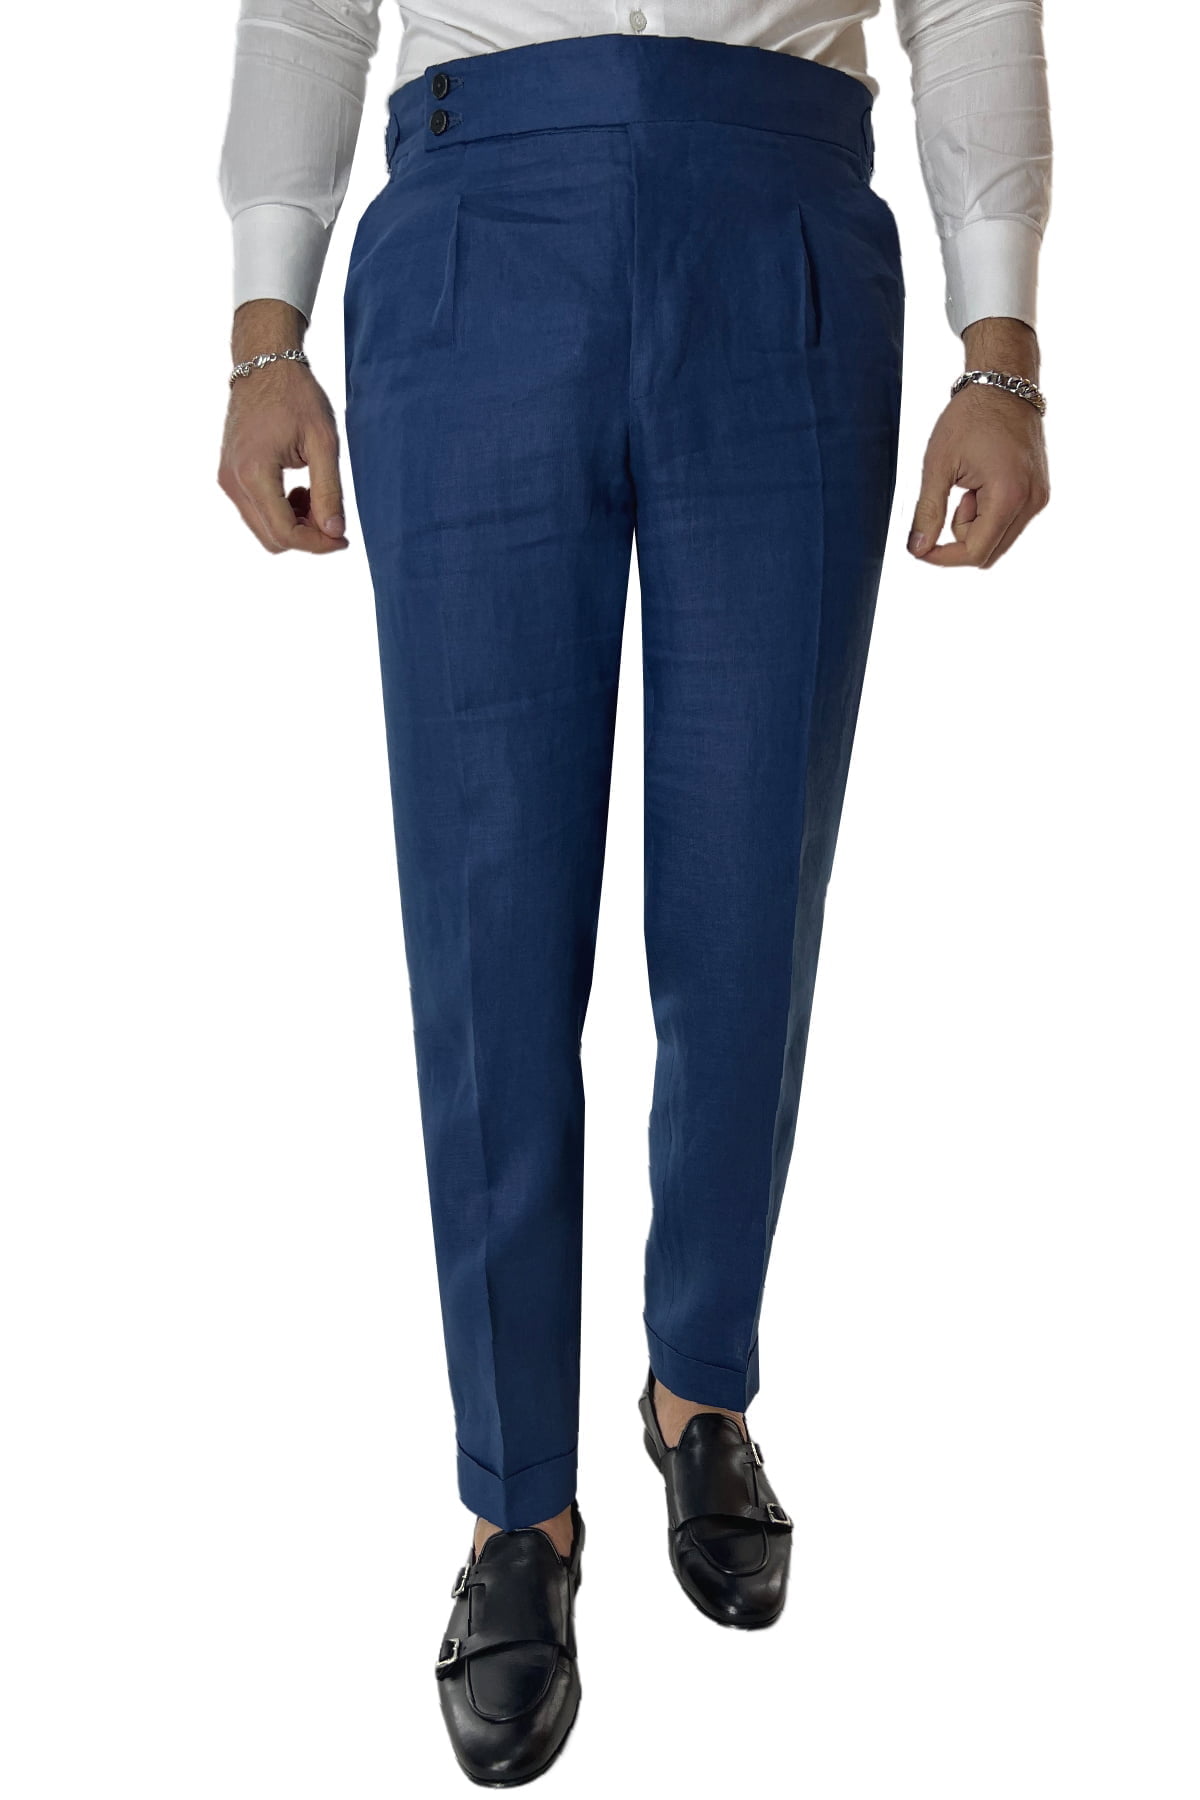 Pantalone uomo royal blu in lino 100% vita alta con pinces fibbie laterali e risvolto 4cm